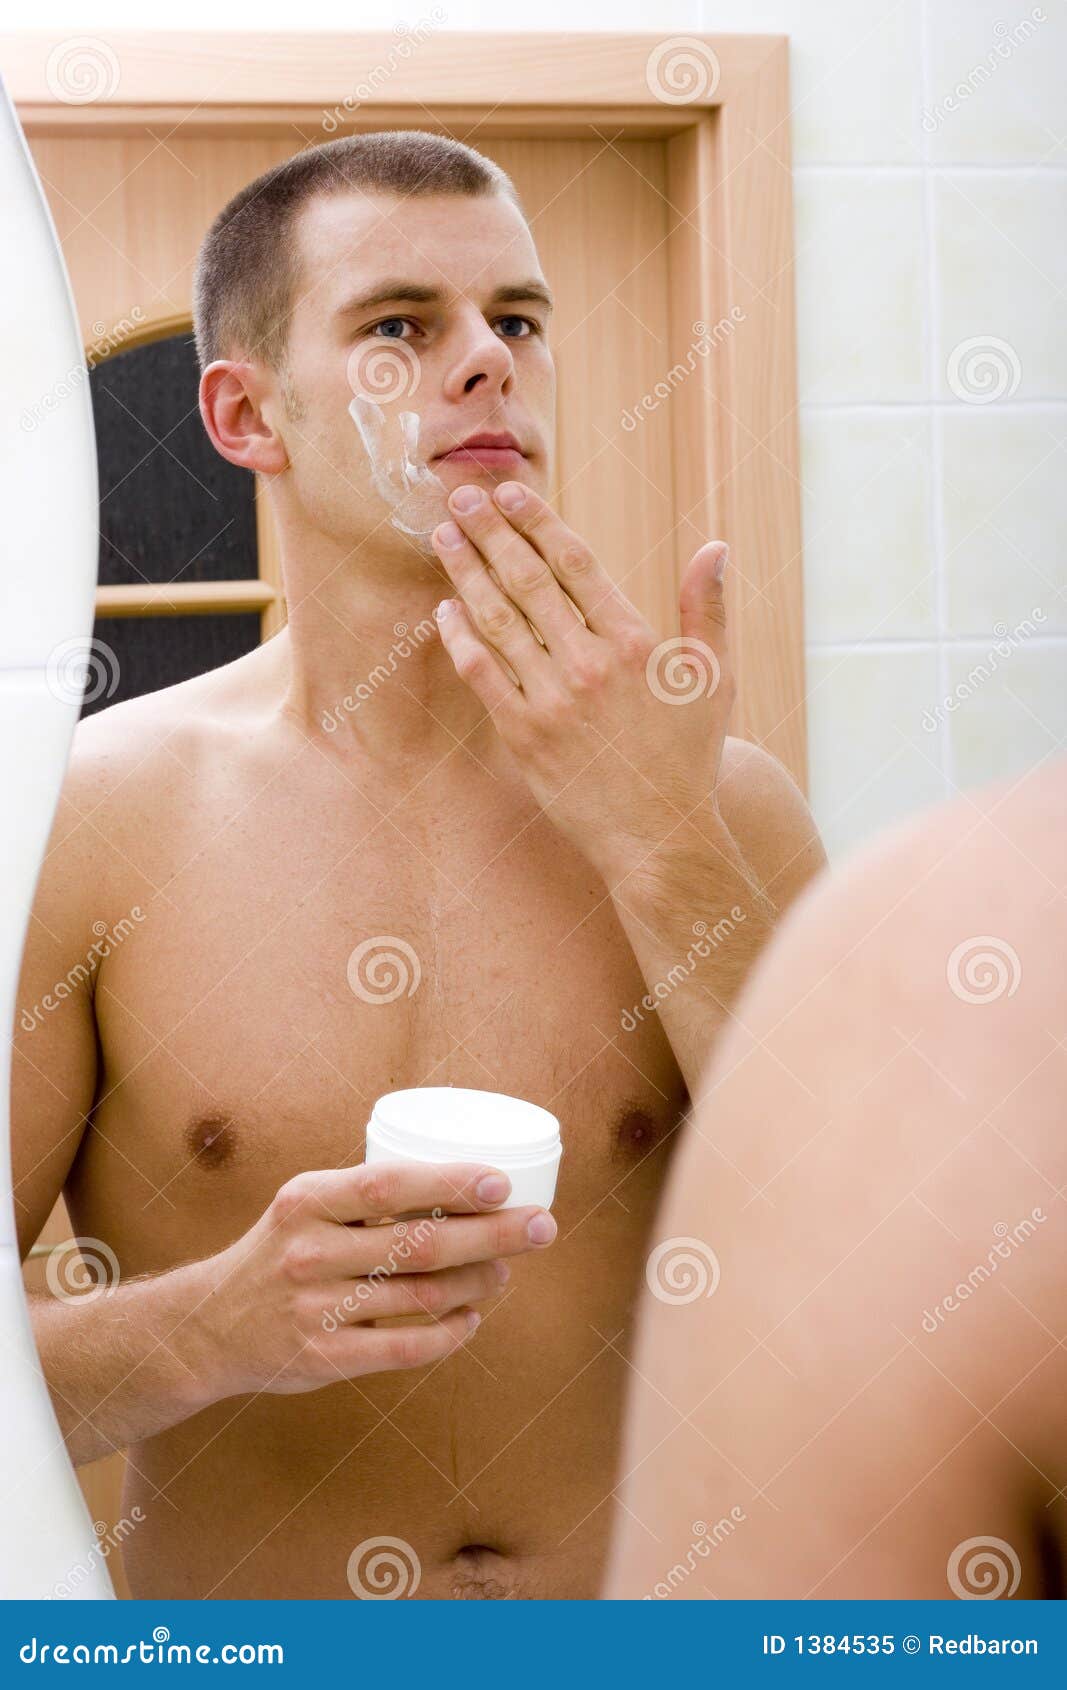 Бреет яйца мужу. Мужчина бреется в ванной. Парень бреет. Мужская фотосессия бреется перед зеркалом. Парень после бритья.